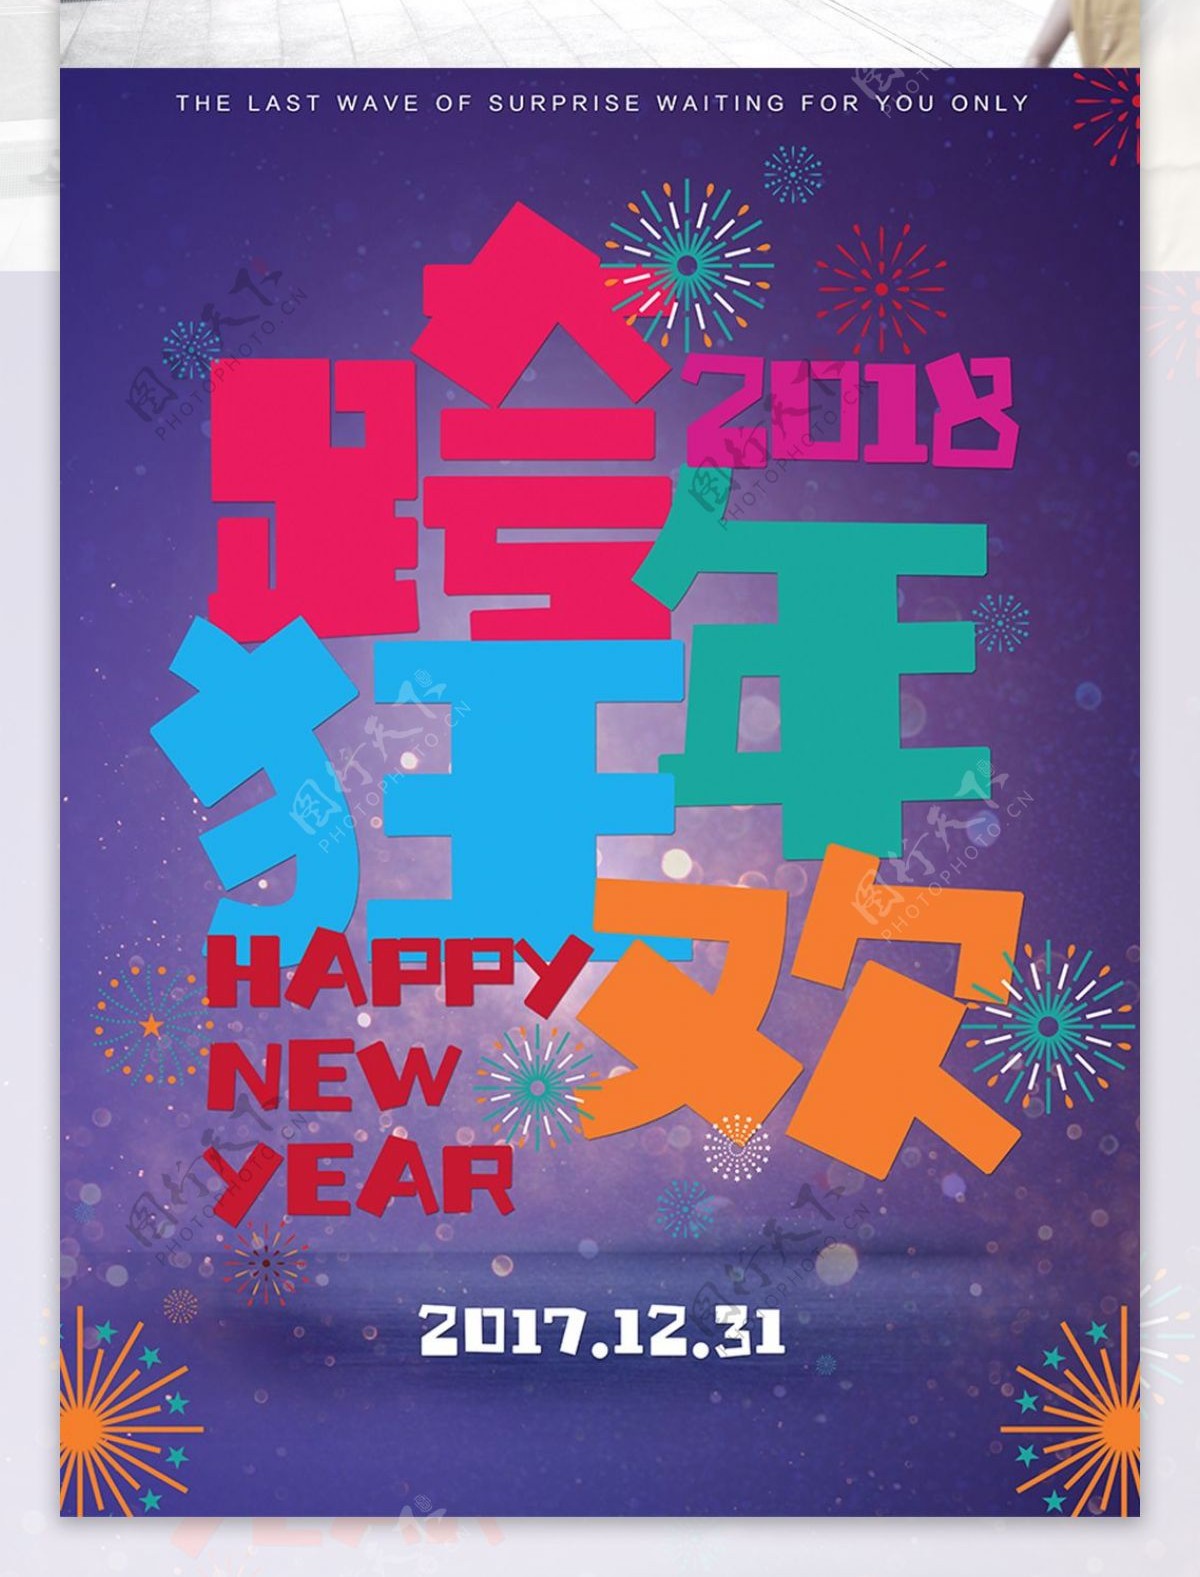 2018新年跨年狂欢夜宣传海报设计模板